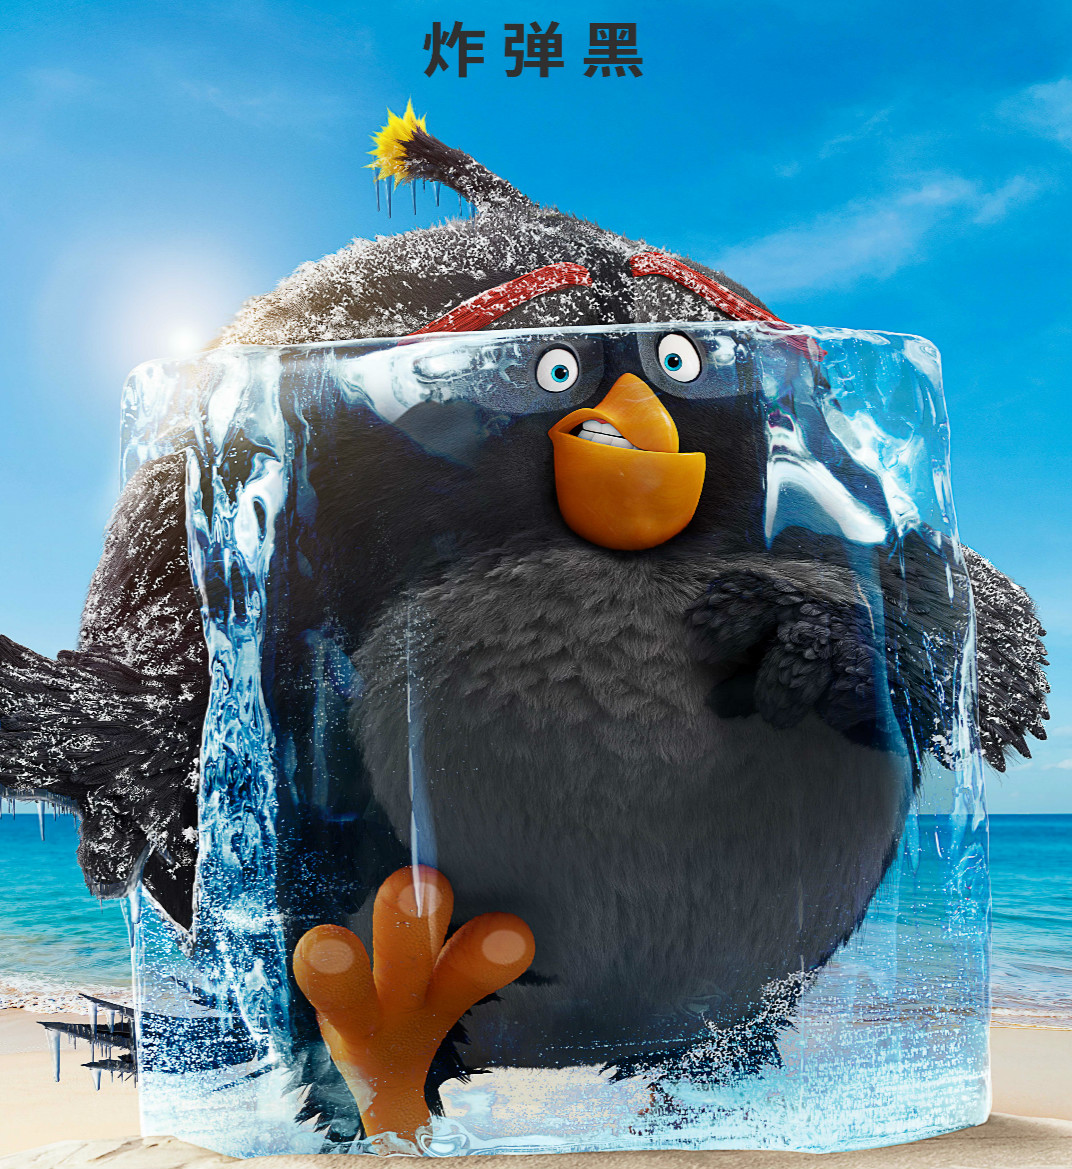 Кадры из мультфильма “Angry Birds 2”